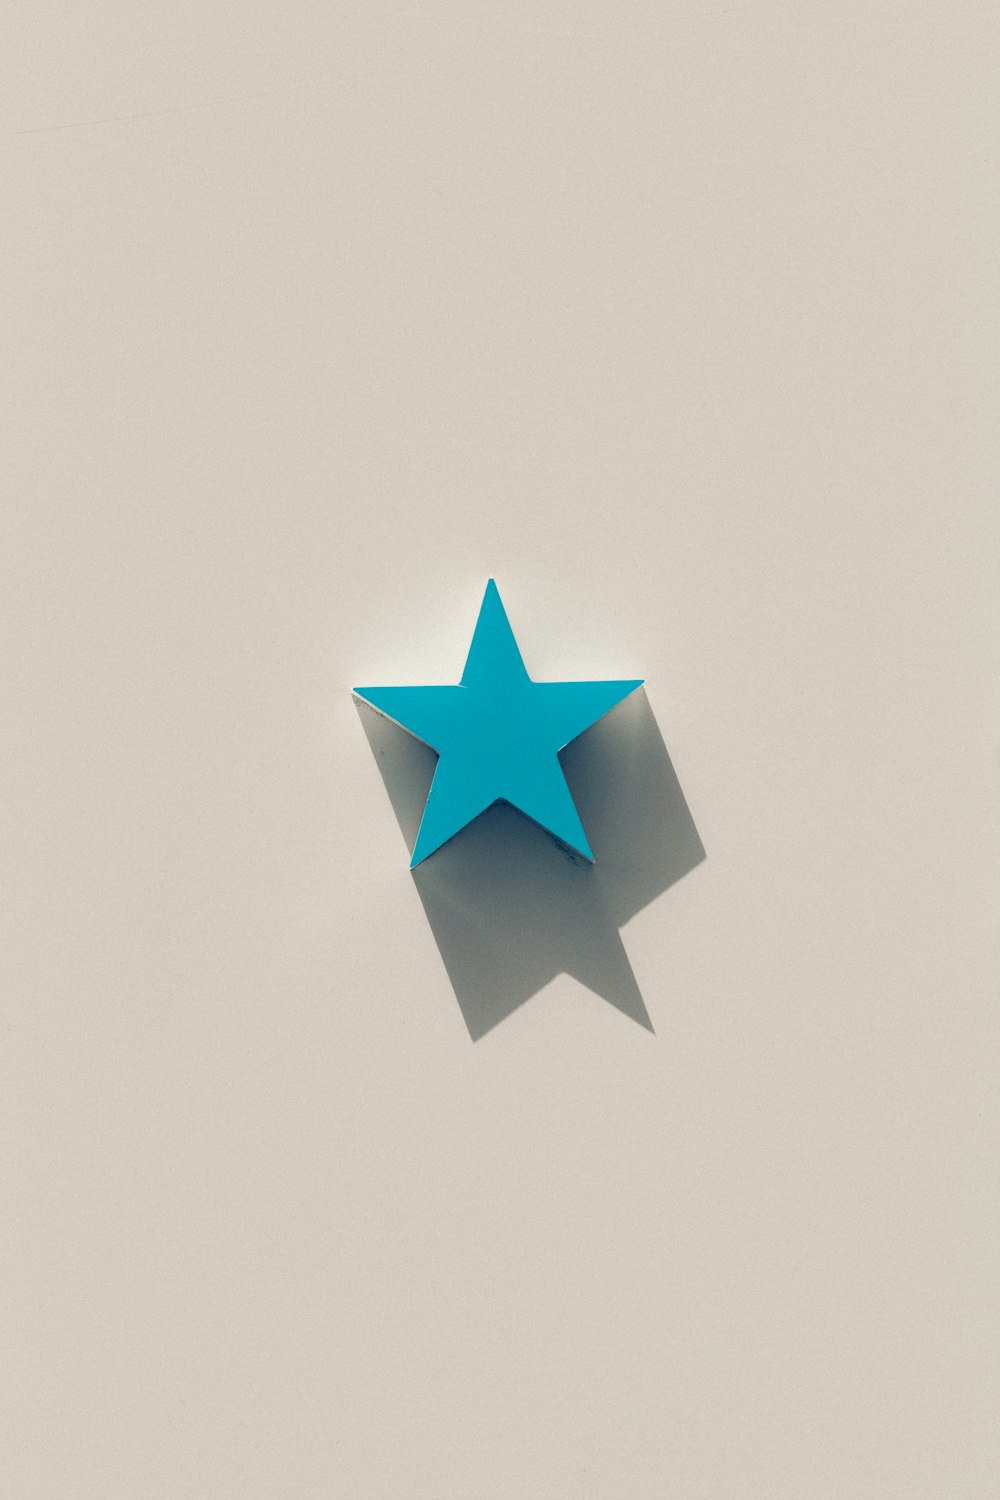 Blaue Stern-Illustration mit weißem Hintergrund